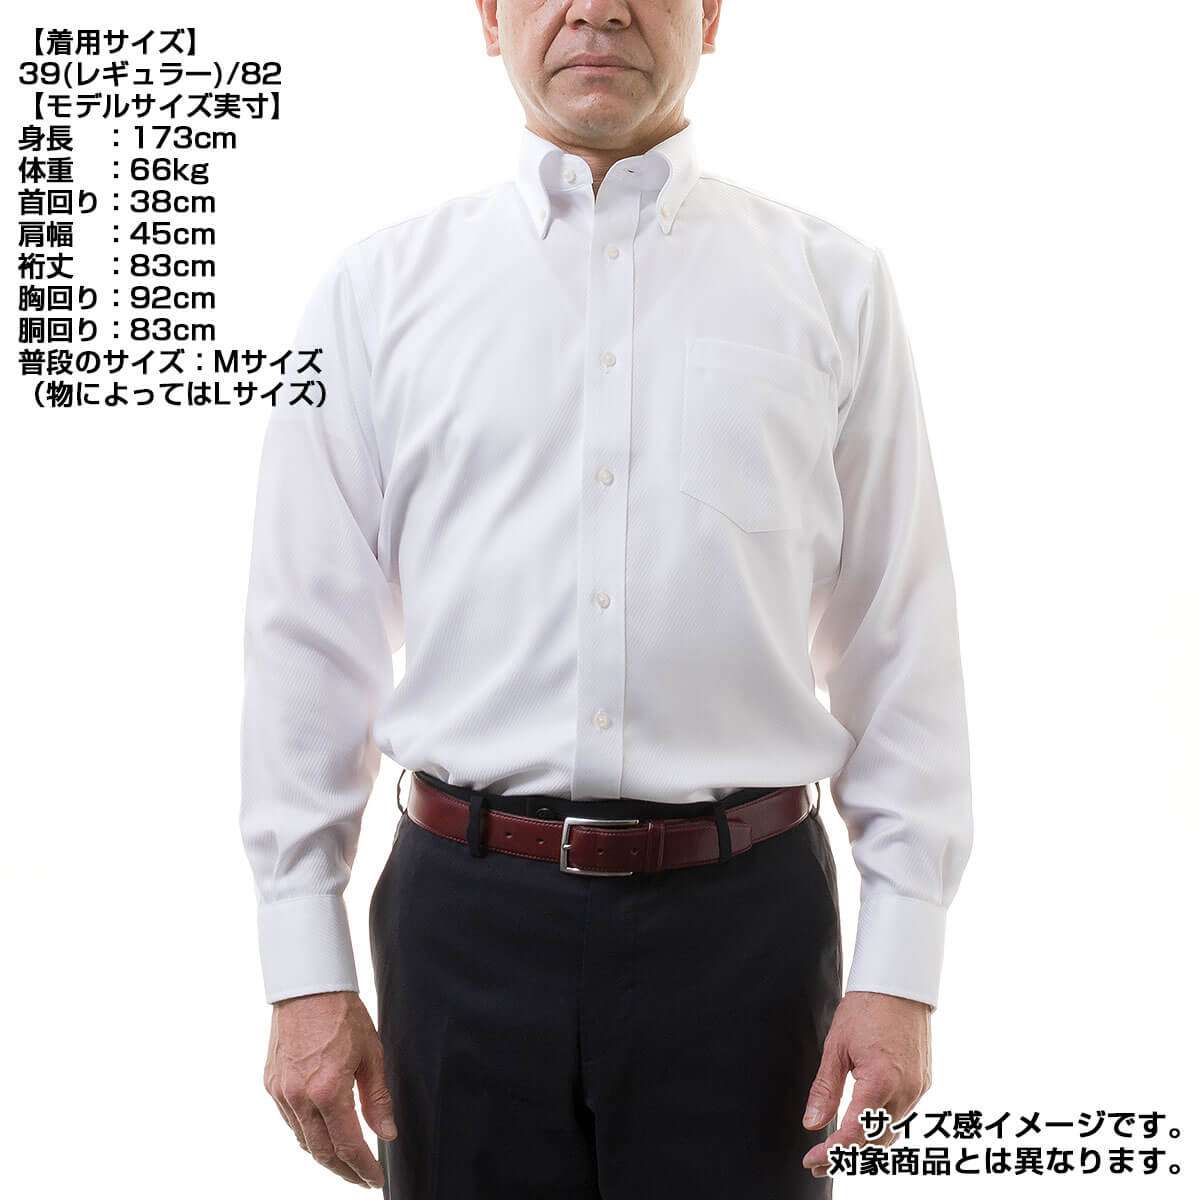 日清紡アポロコット【初回限定 トライアルシャツ】/ 5,280円